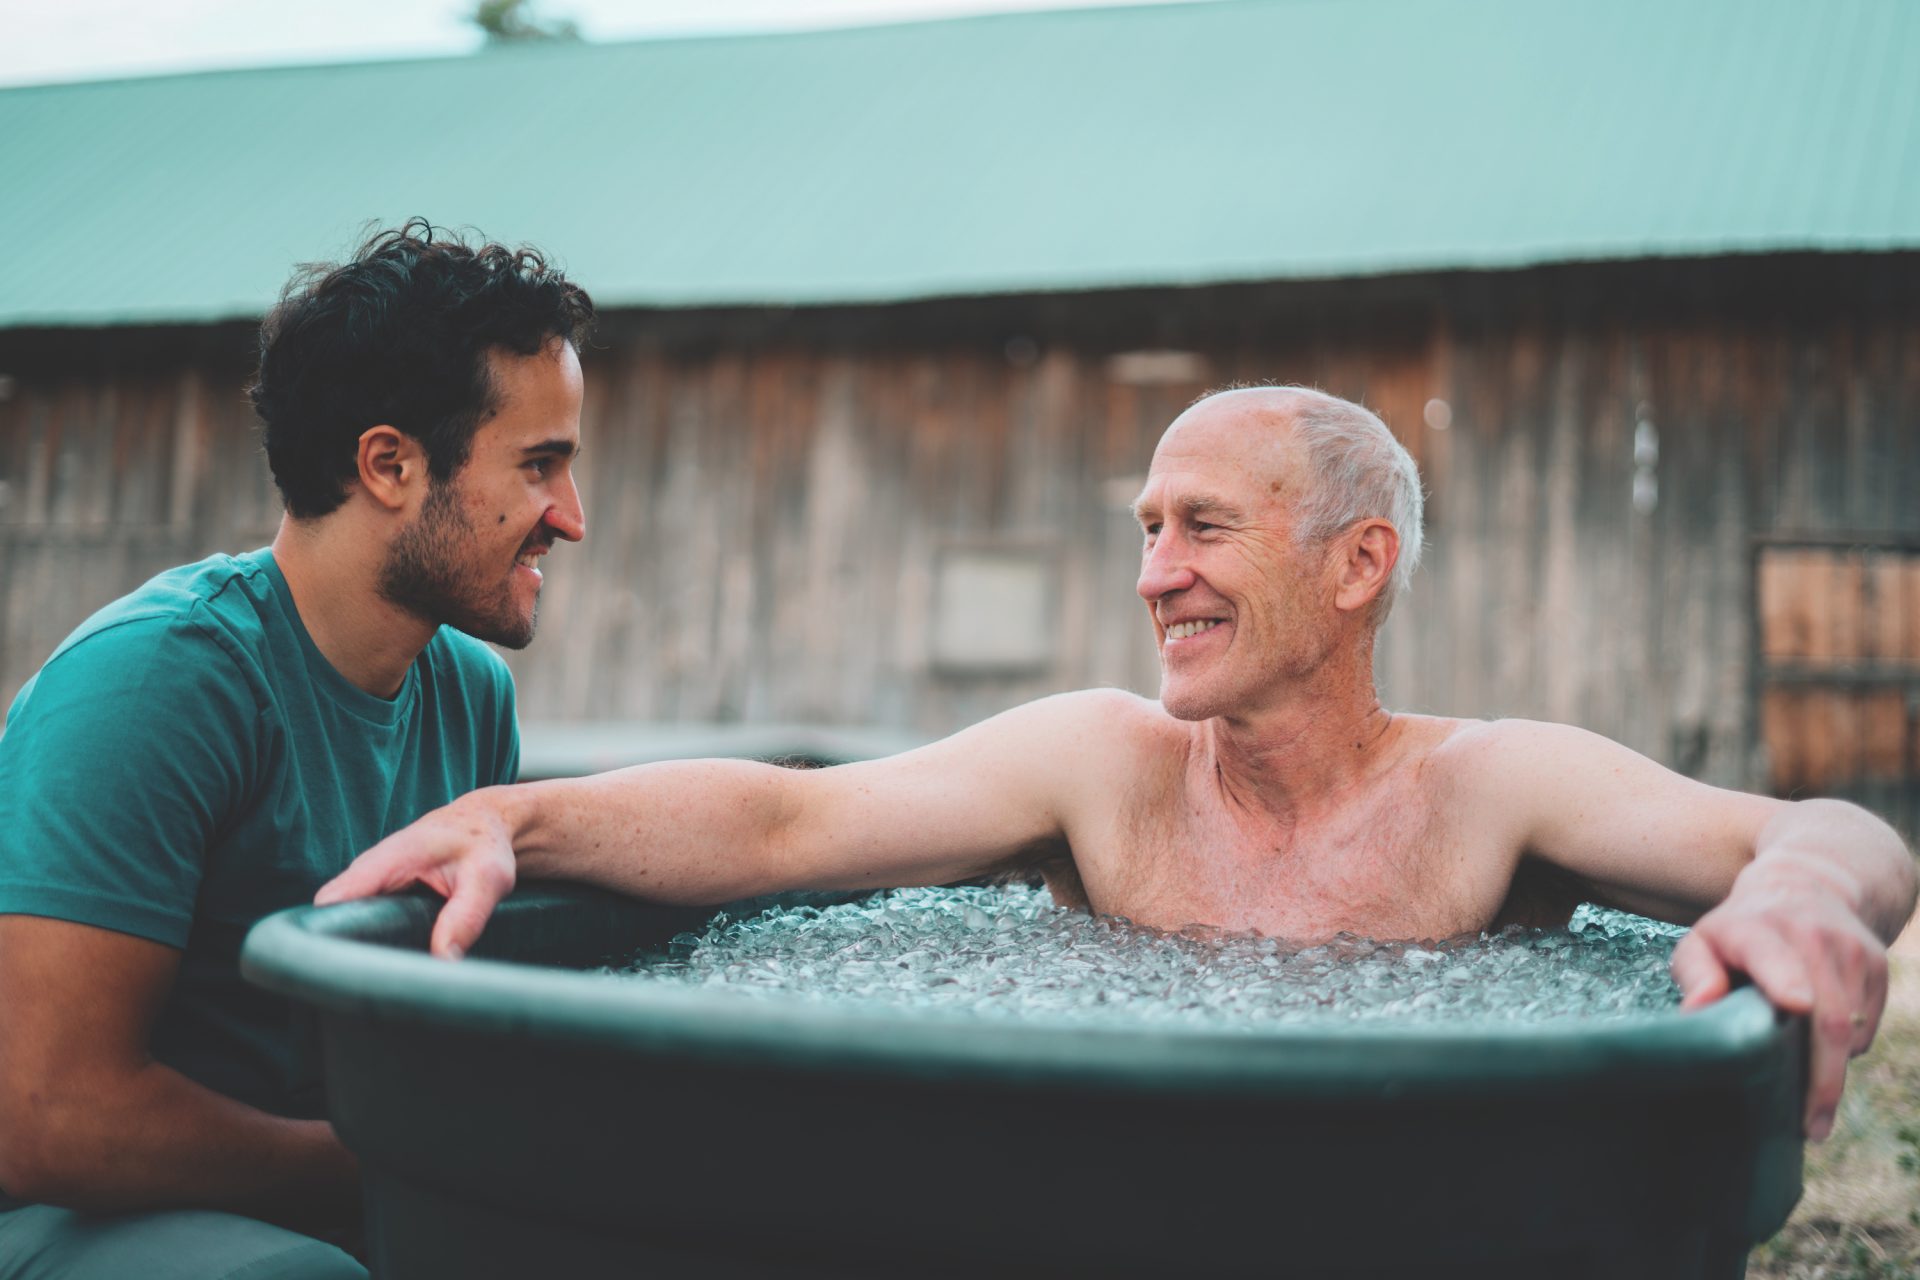 Wim Hof Breathing Method and Benefits – ELU - Saunas & Cold Tubs